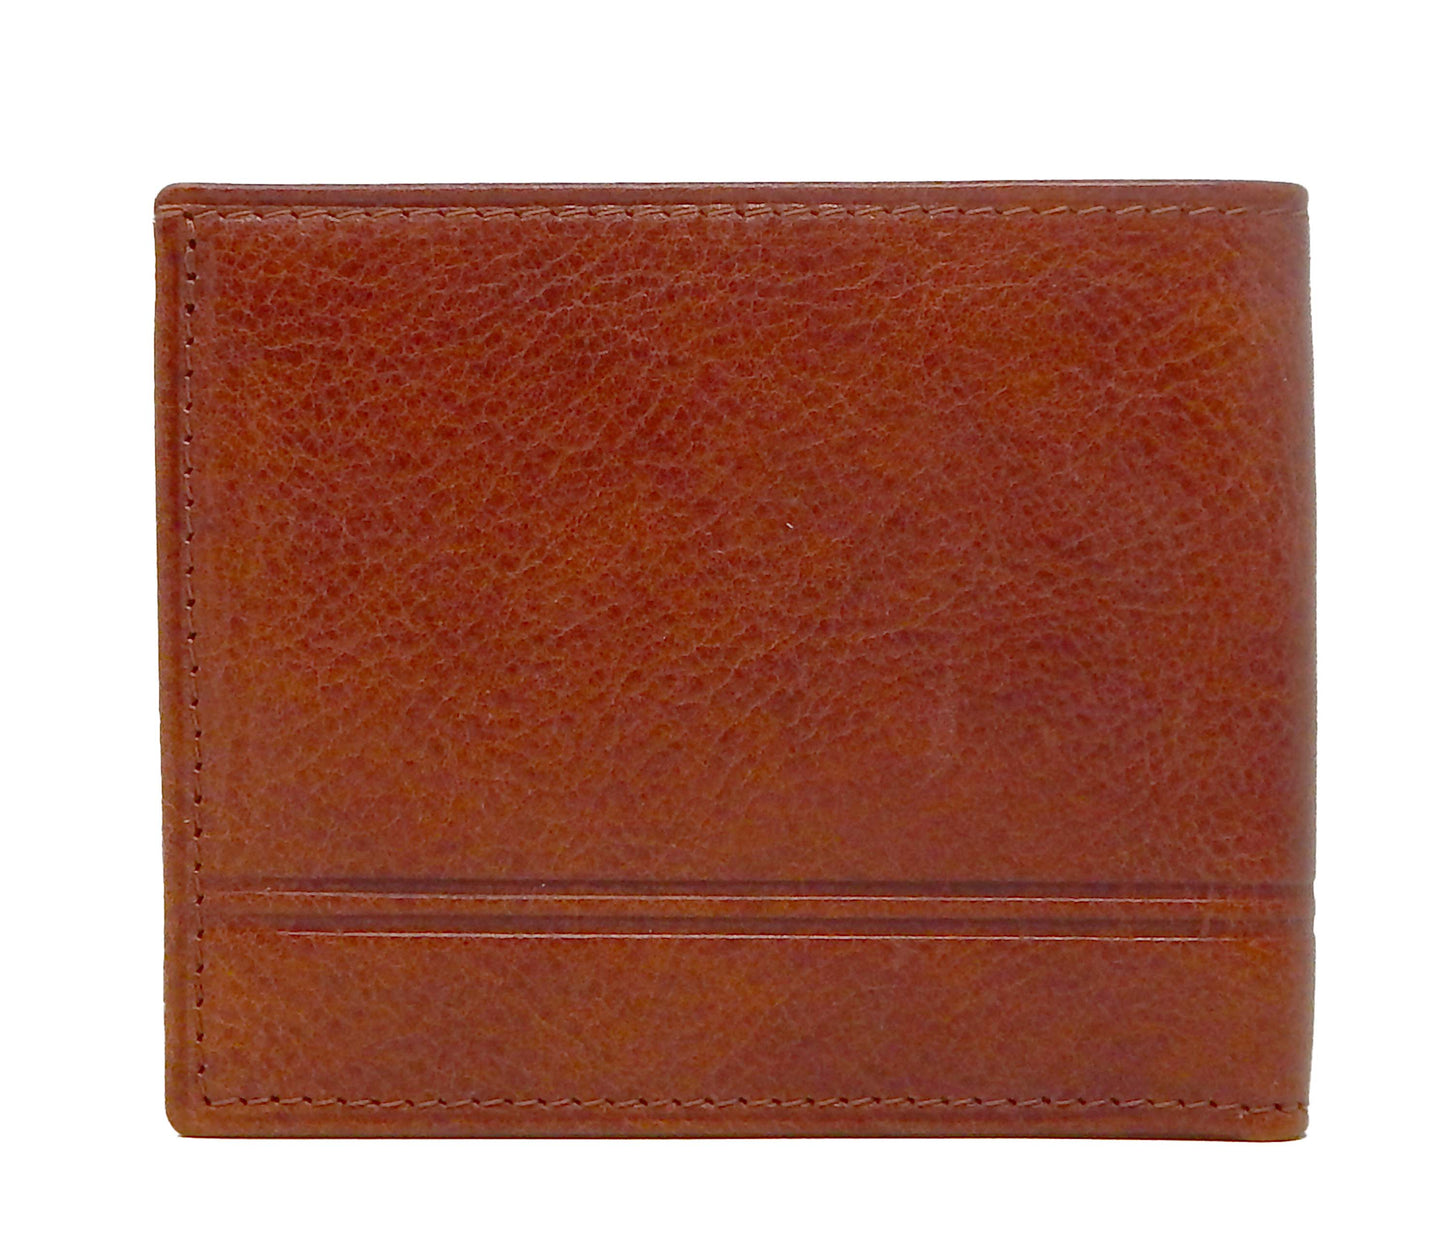 Cavalinho Men's Trifold Leather Wallet - SaddleBrown - 28610523.13.99_3